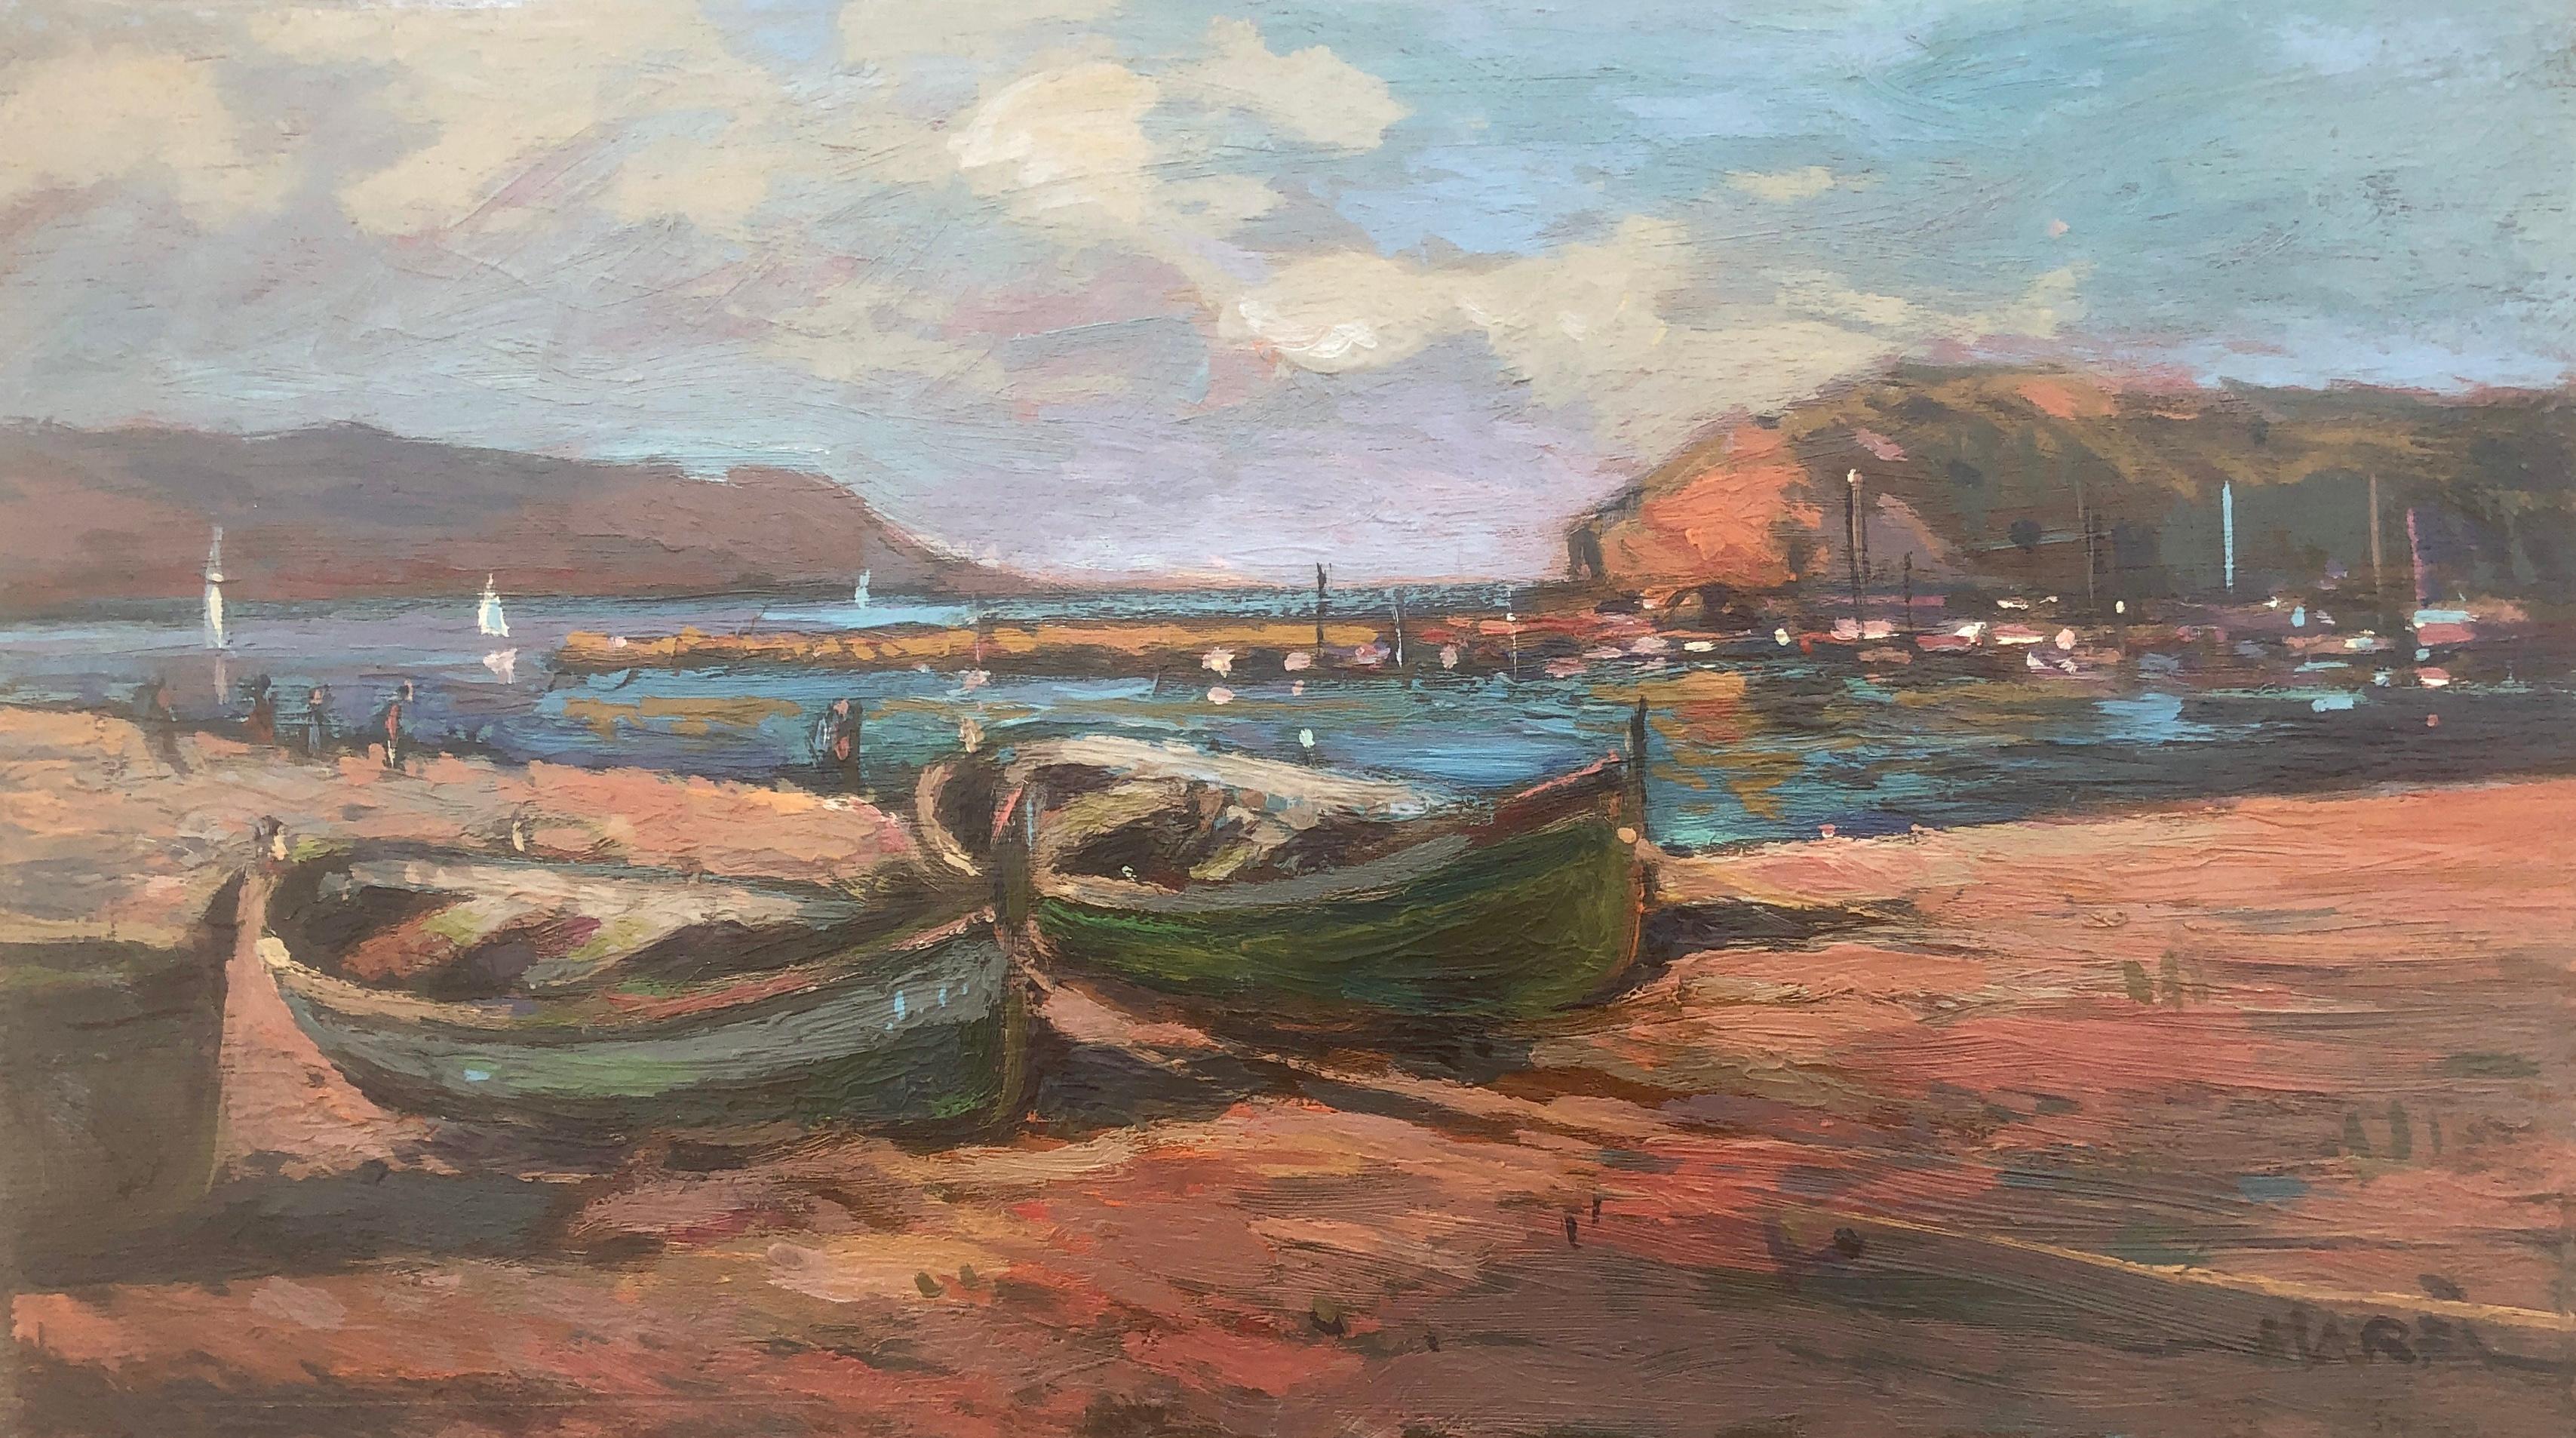 Figurative Painting Josep Marfa Guarro - Plage de pêcheurs paysage marin espagnol peinture originale huile sur carton méditerranée